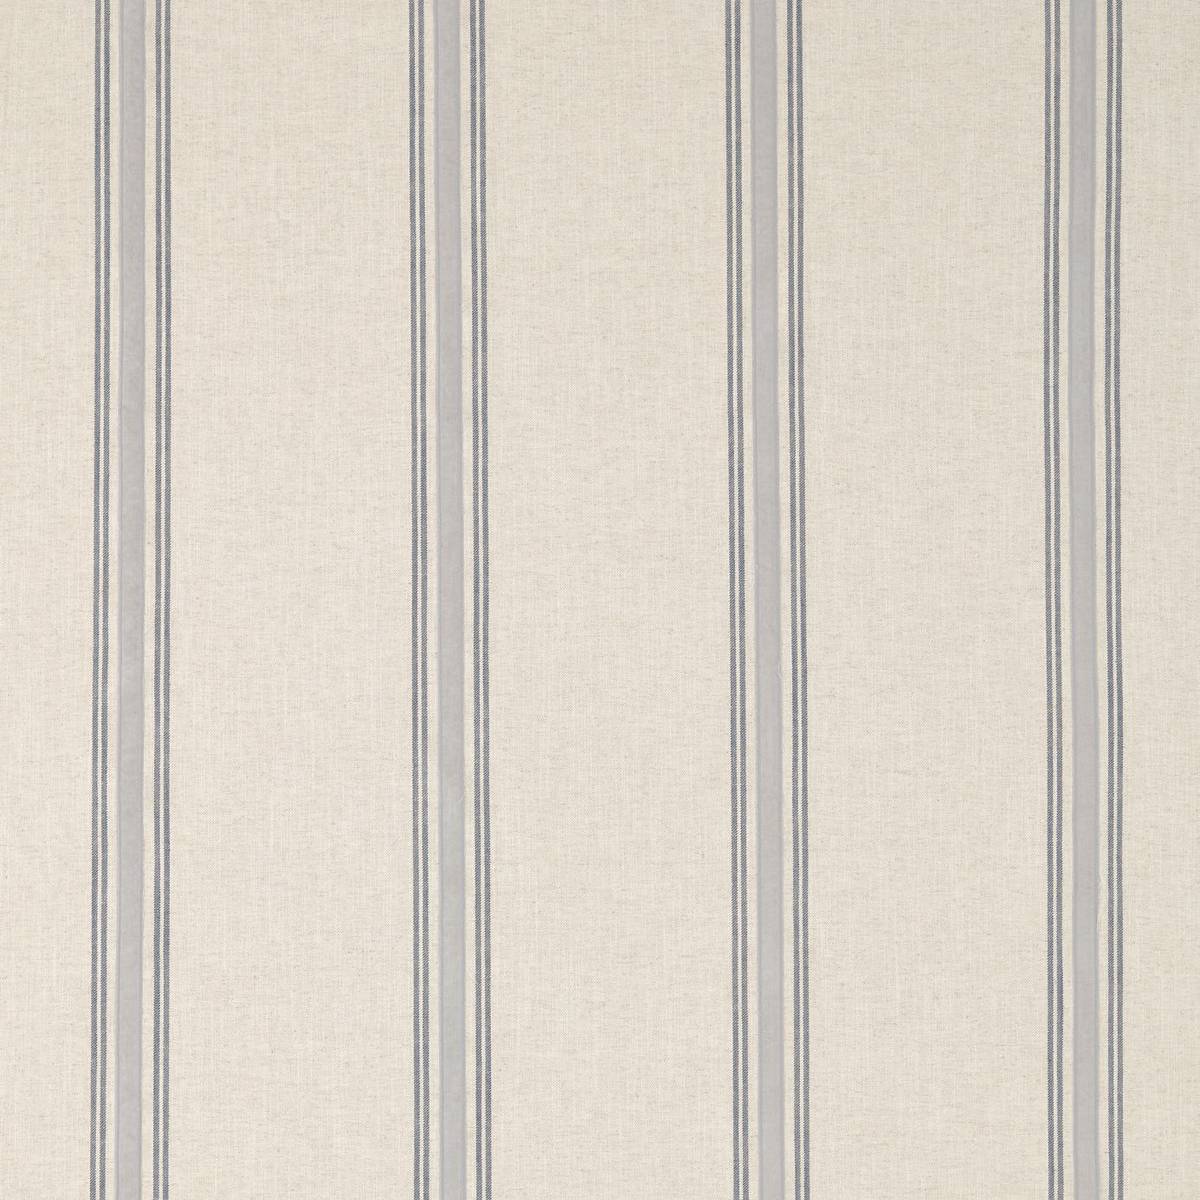 Hockley Stripe Indigo Fabric by Sanderson